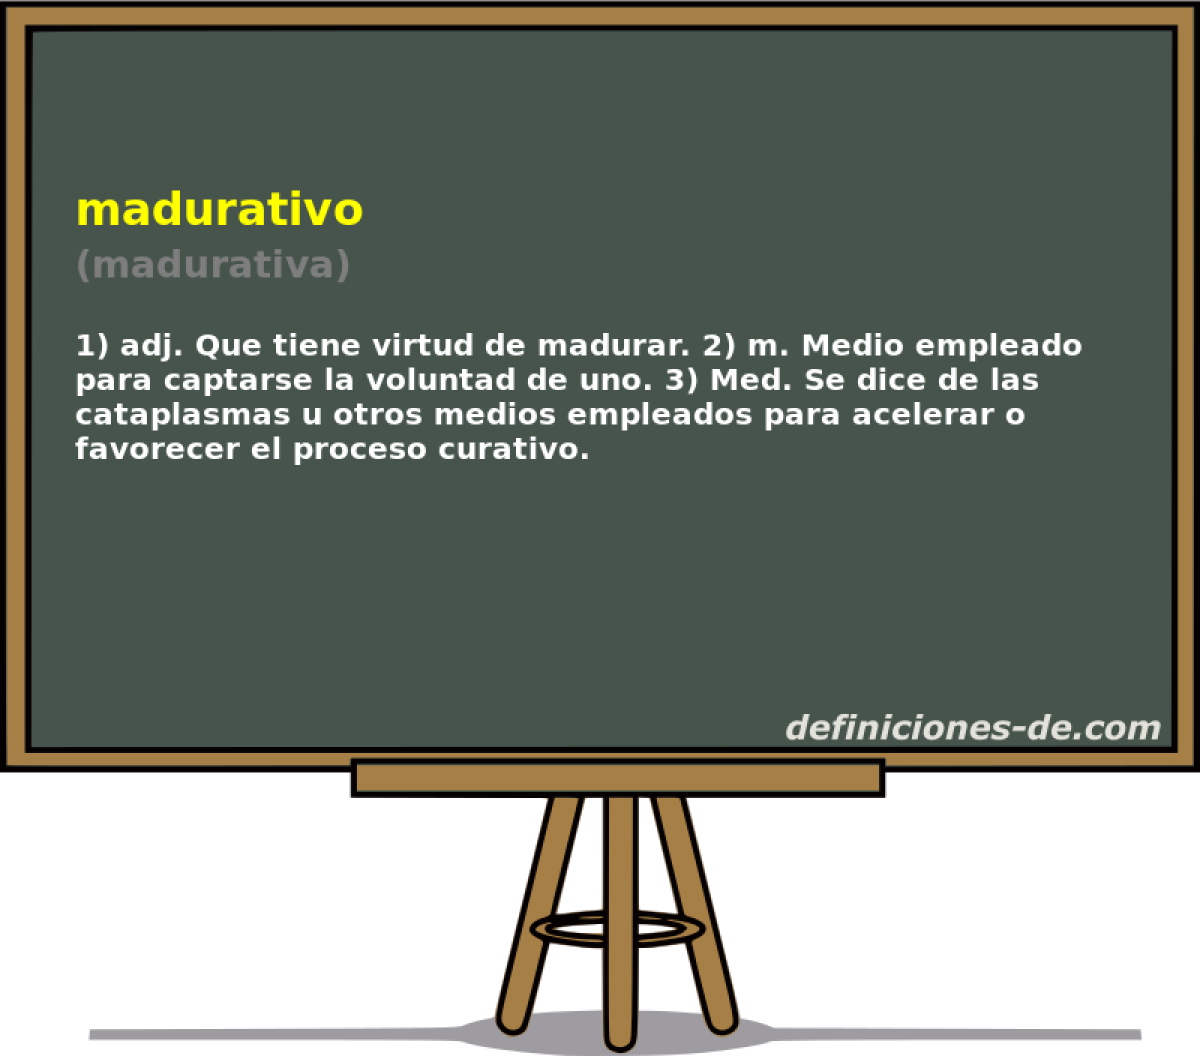 madurativo (madurativa)